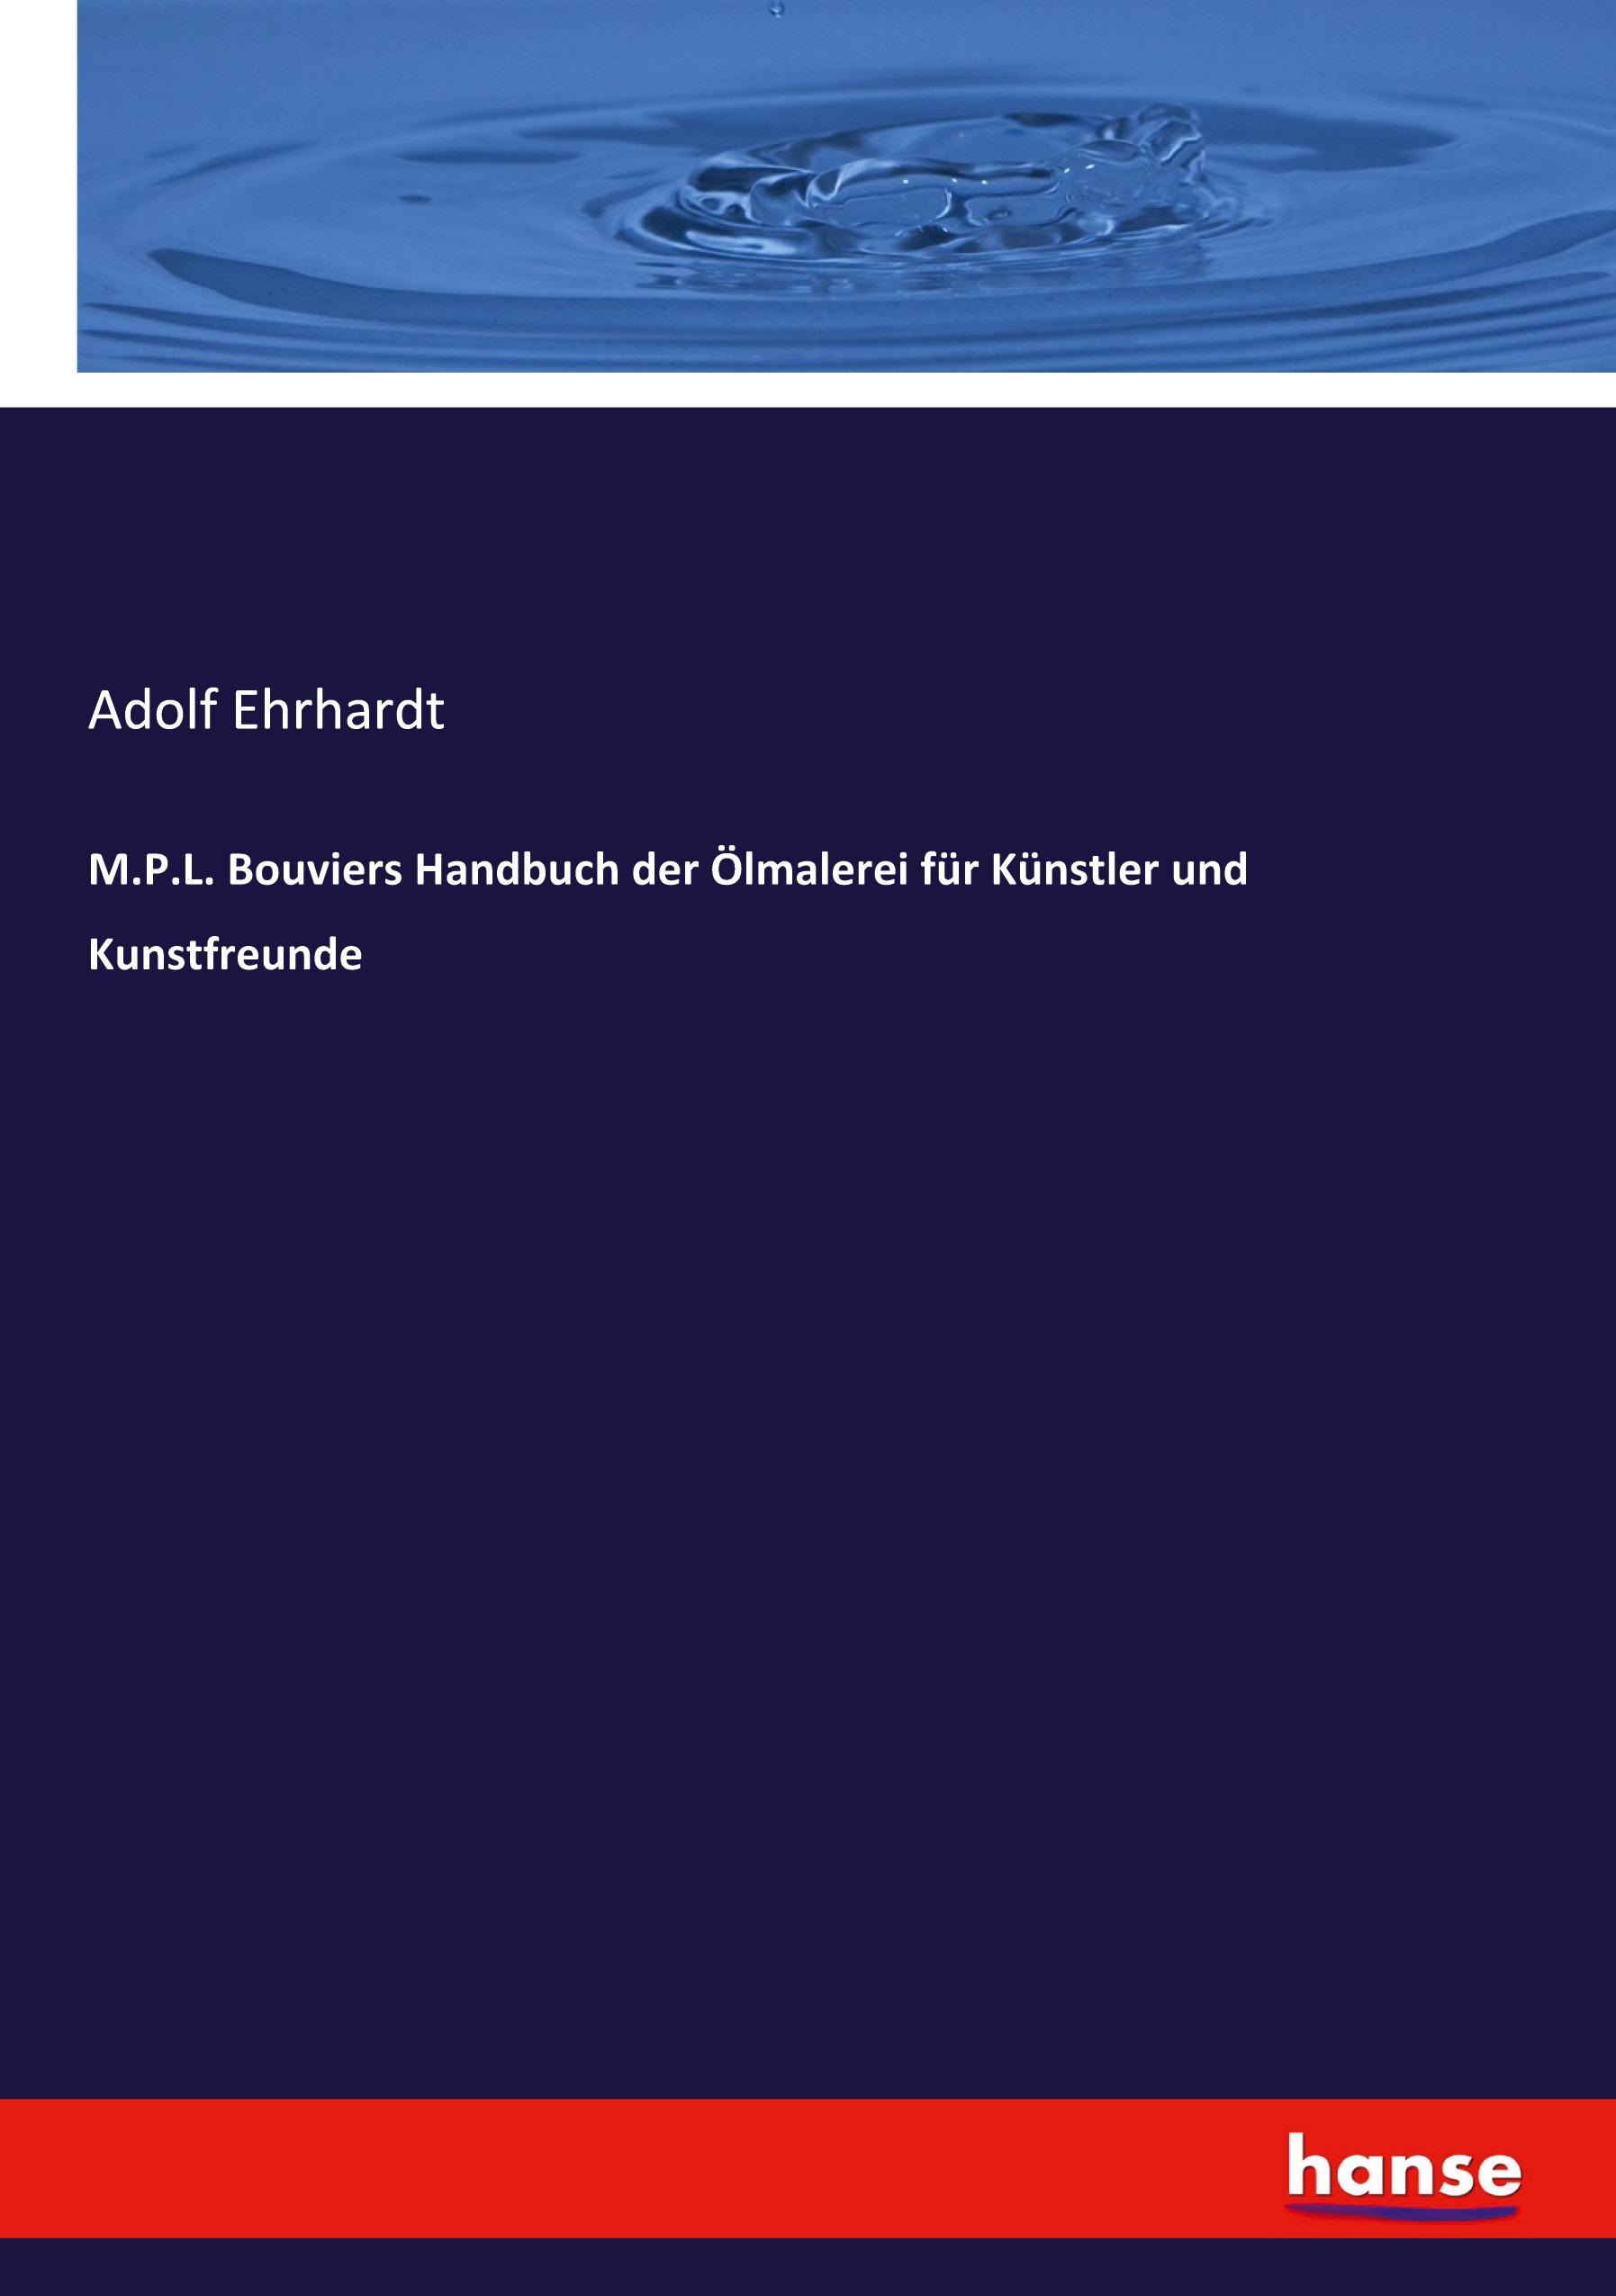 M.P.L. Bouviers Handbuch der Ölmalerei für Künstler und Kunstfreunde / Adolf Ehrhardt / Taschenbuch / Paperback / 444 S. / Deutsch / 2021 / hansebooks / EAN 9783743608917 - Ehrhardt, Adolf